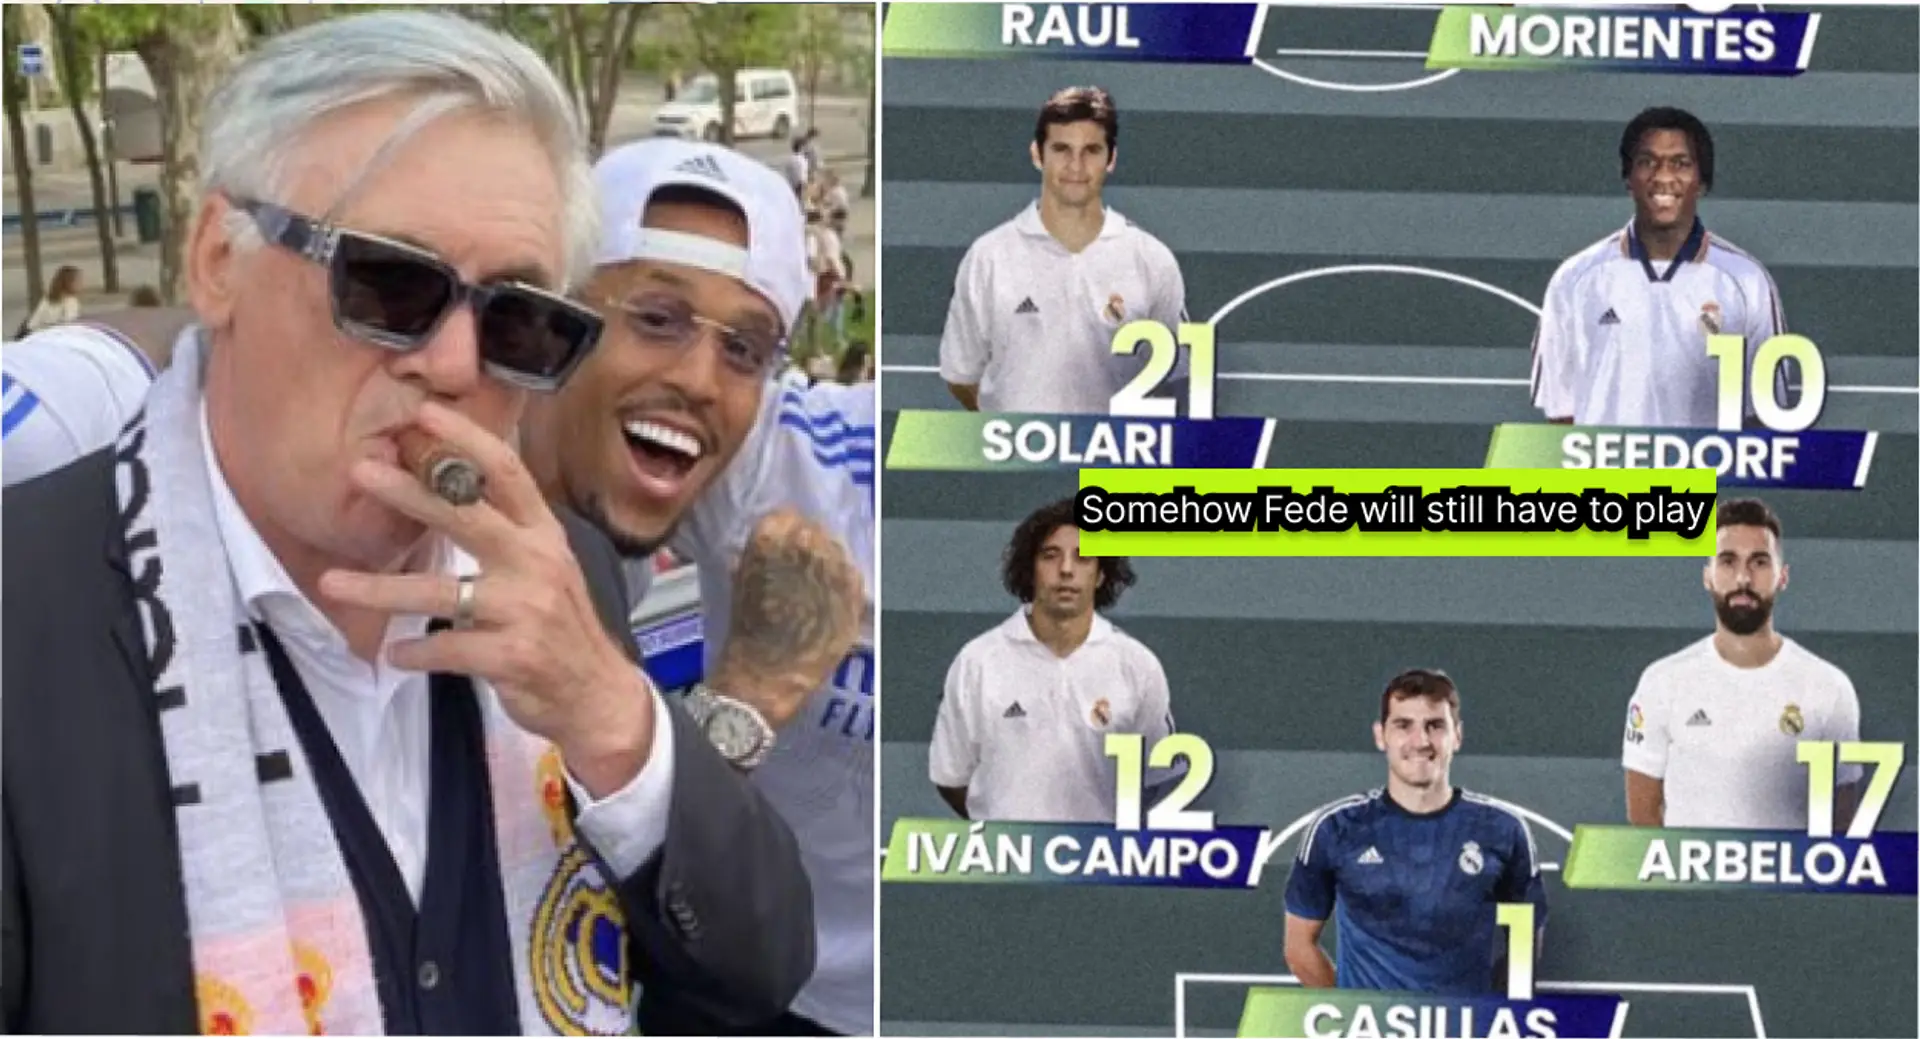 "Enfin un peu de rotation d'Ancelotti.": La réaction hilarante des fans face au XI du Real Madrid Legends contre Porto